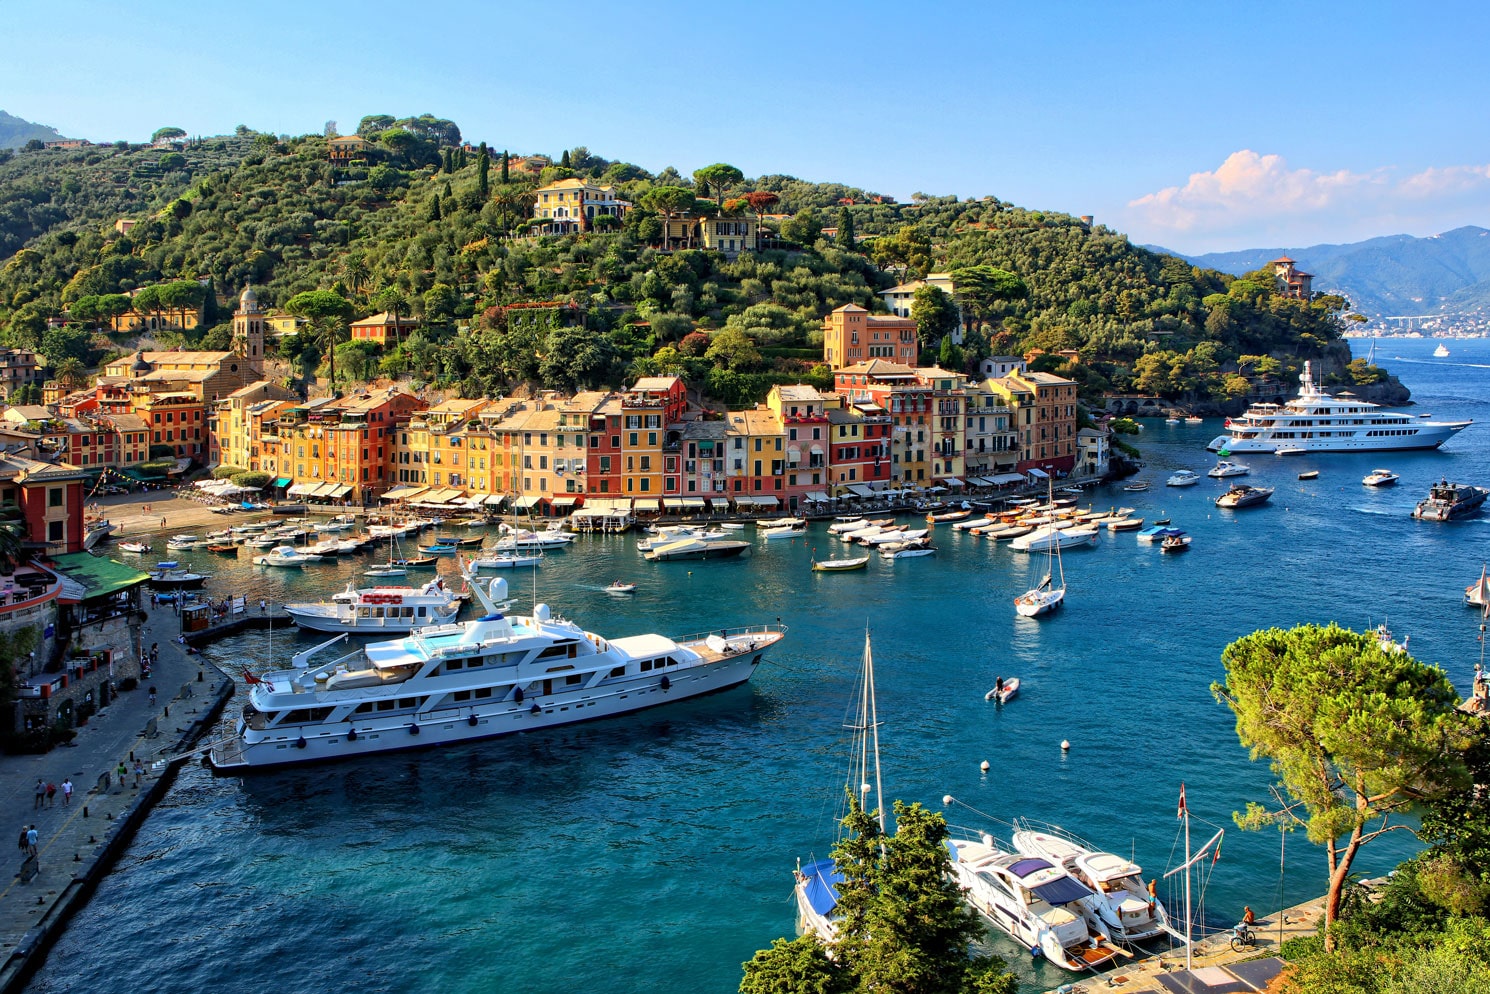 The Top 10 Hotels in Portofino Italian Riviera